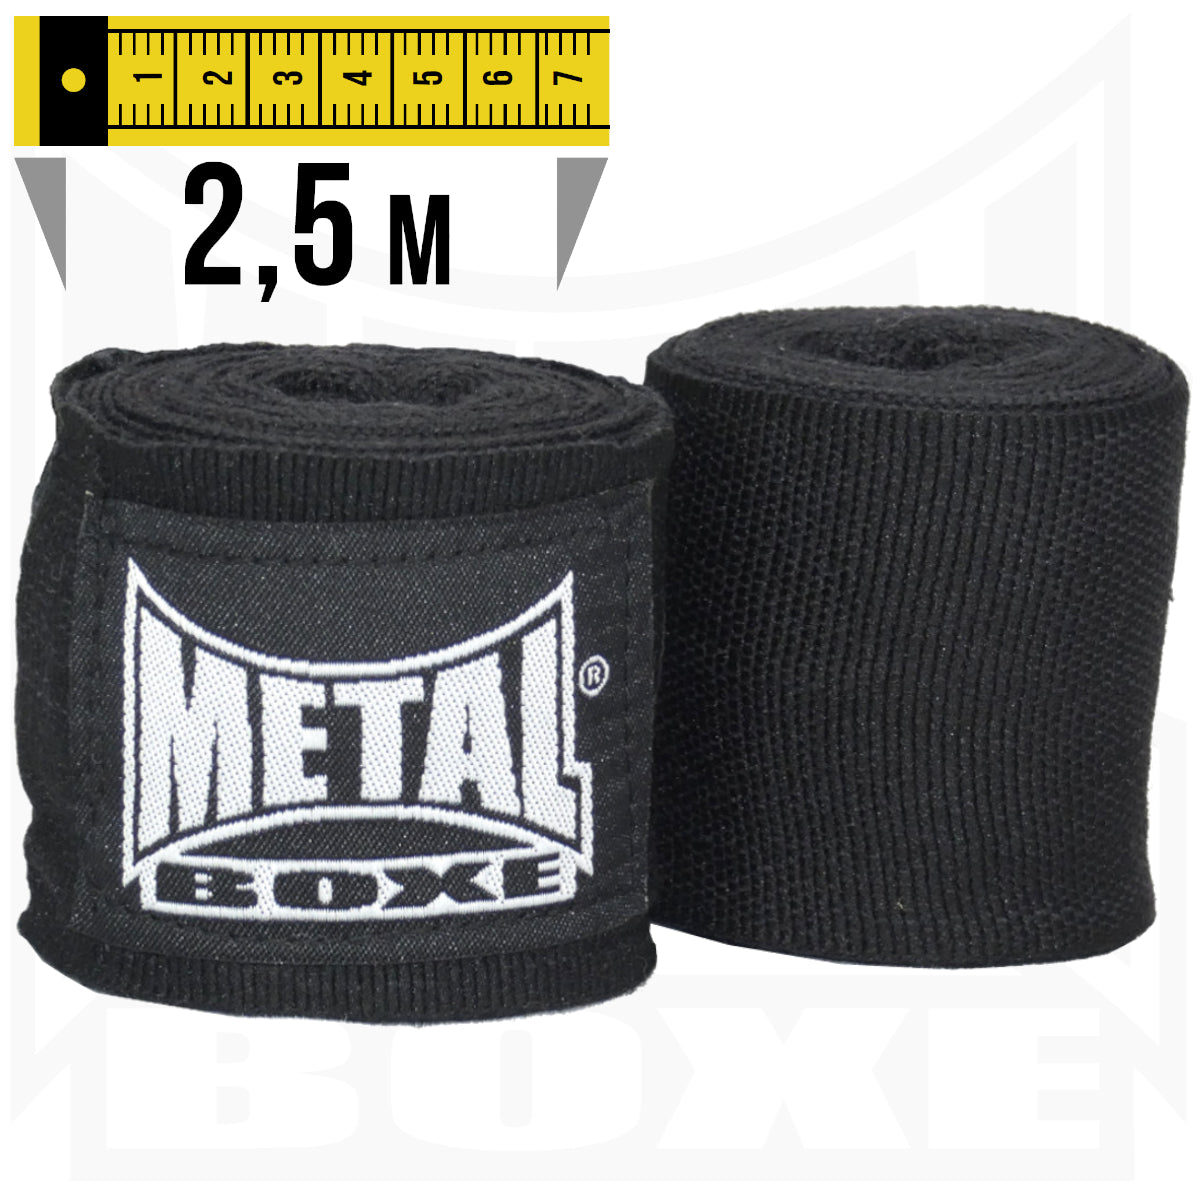 Bandages de Boxe Metal Boxe – Noir – 2,5 m